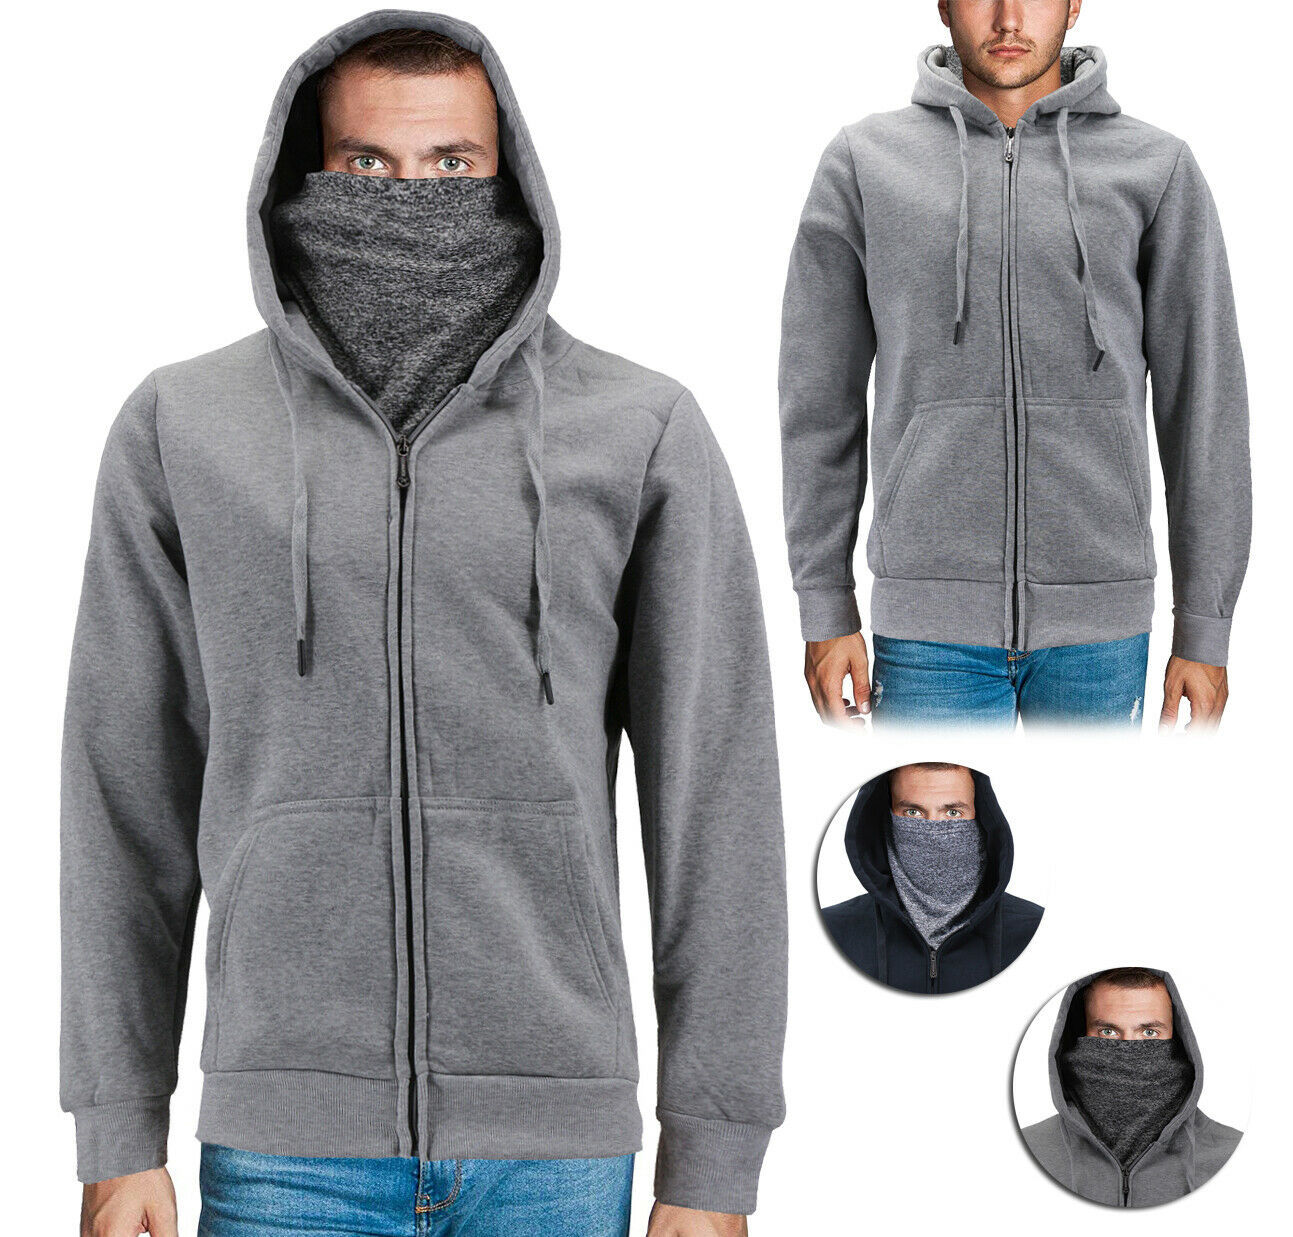 Primary image for Men's Activewear Fleece Lined Ninja Mask Zip Up Gym Sport Hoodie Sweater Jacket